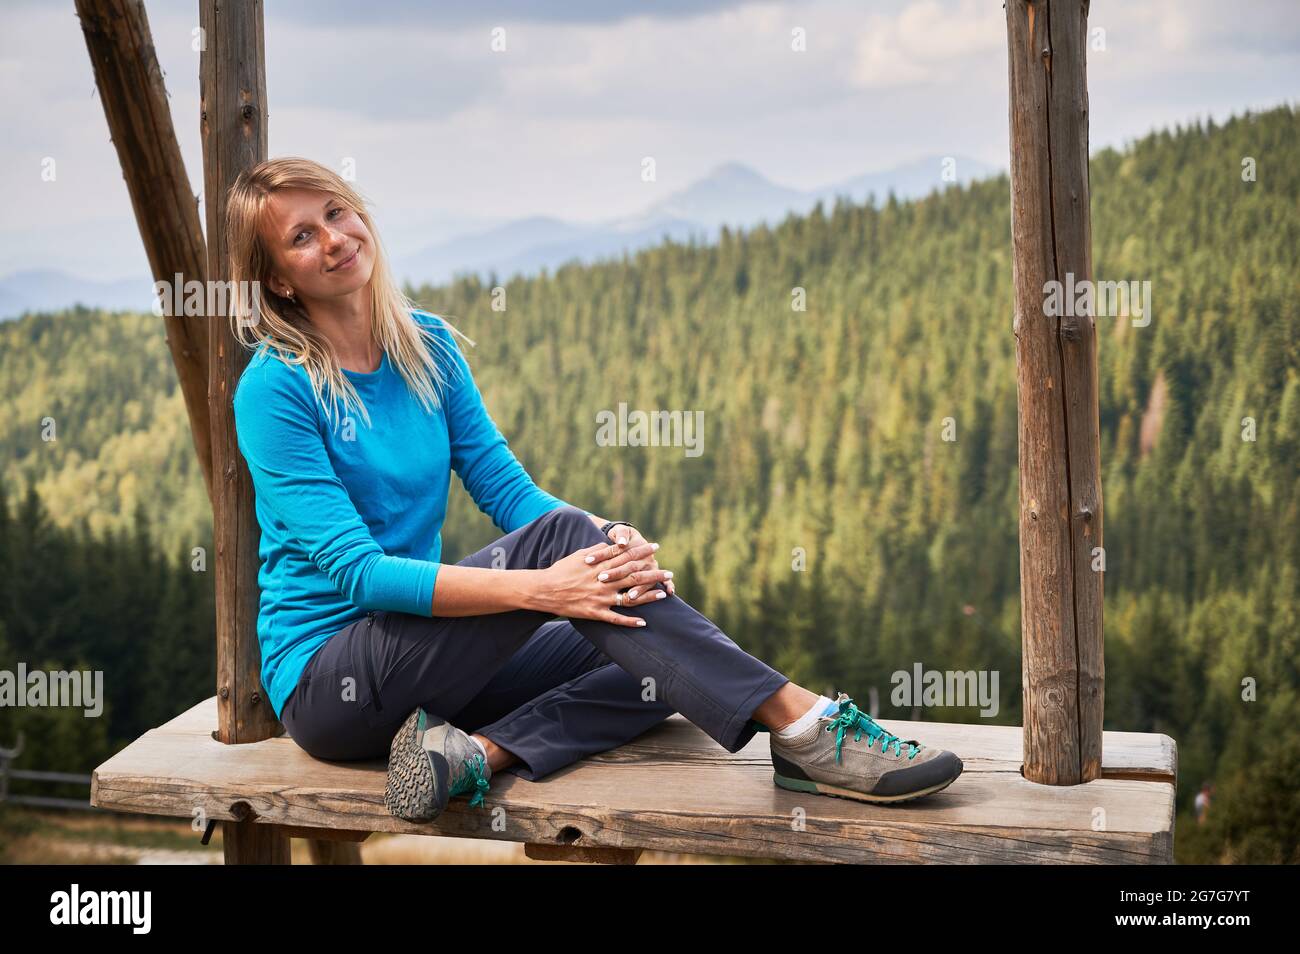 Ritratto di donna dolce in blusa blu che si sedeva e sorridente mentre si rilassava su un'enorme altalena in legno a caldo giorno d'estate. Sullo sfondo della foresta, silhouette di colline di montagna e cielo grigio. Foto Stock